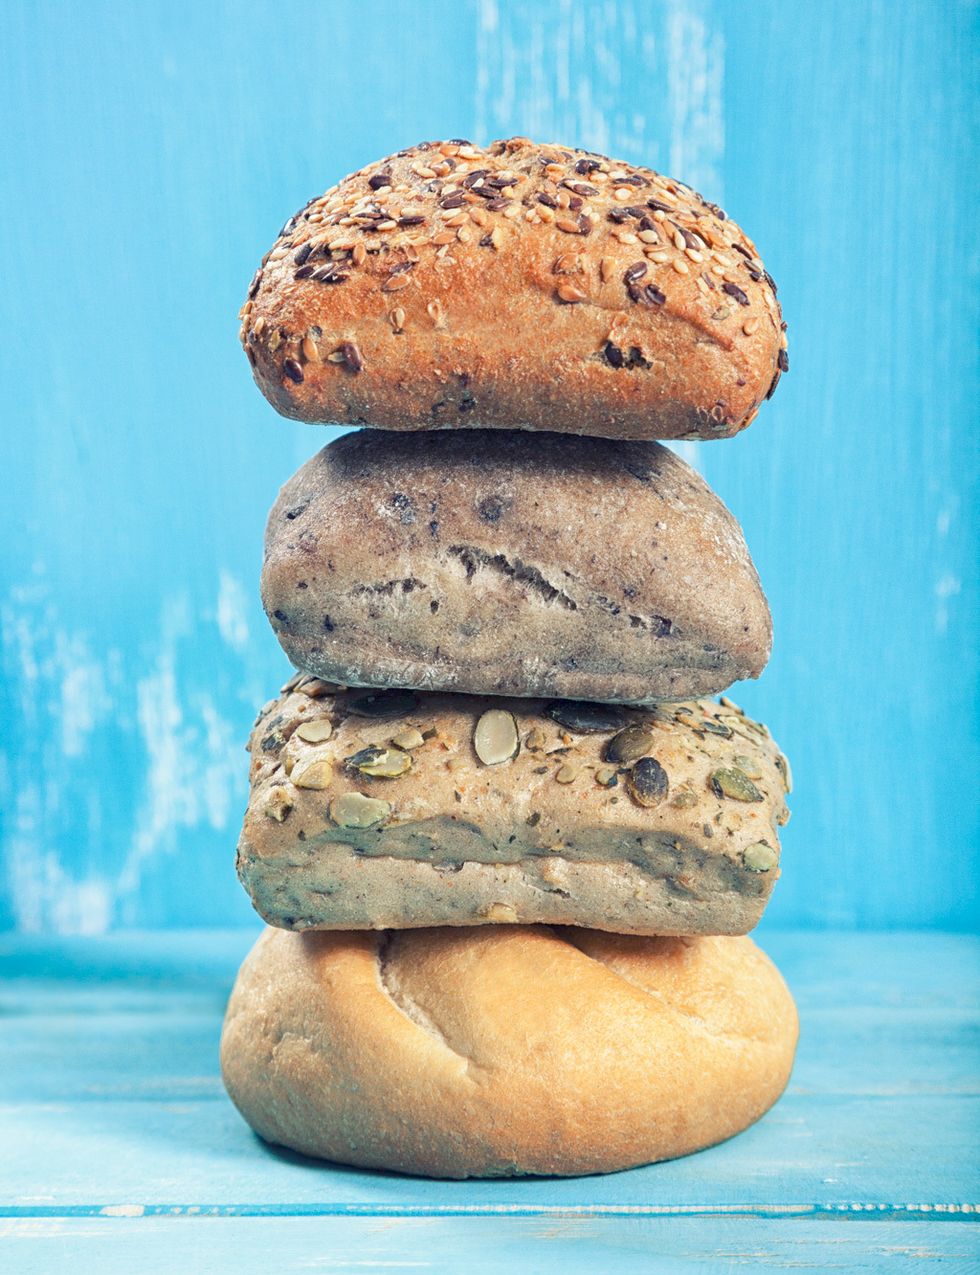 <p>Si se consume pan, la ración debe limitarse a 40 gramos por comida y ser, preferiblemente, integral por su alto contenido en fibra.&nbsp;</p><p>&nbsp;</p>